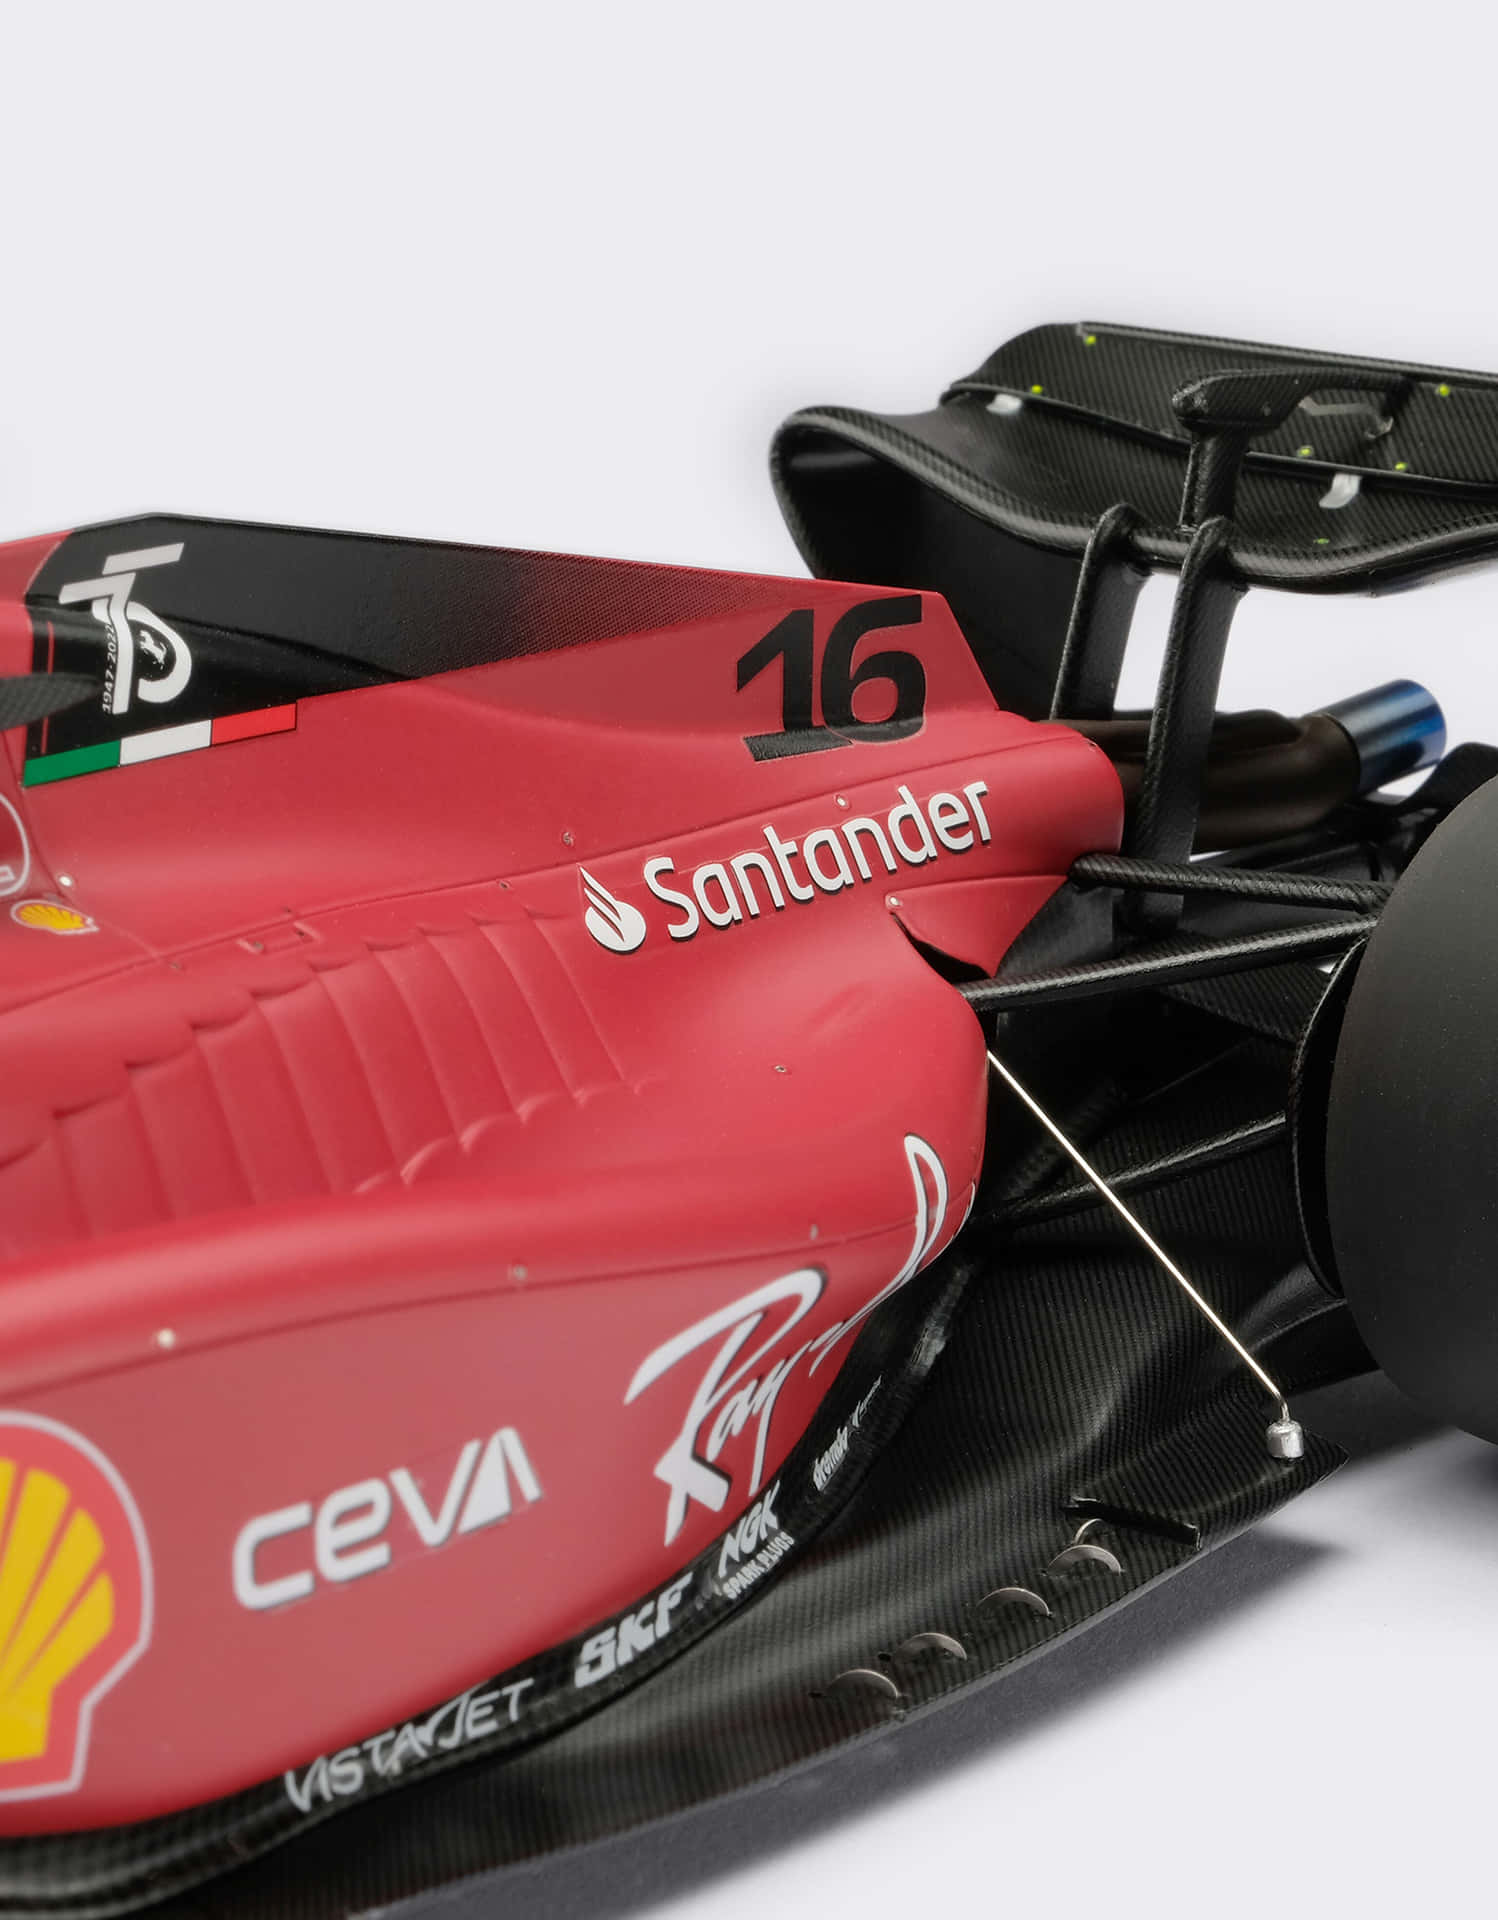 Ferrari F1 Racecar Closeup Wallpaper